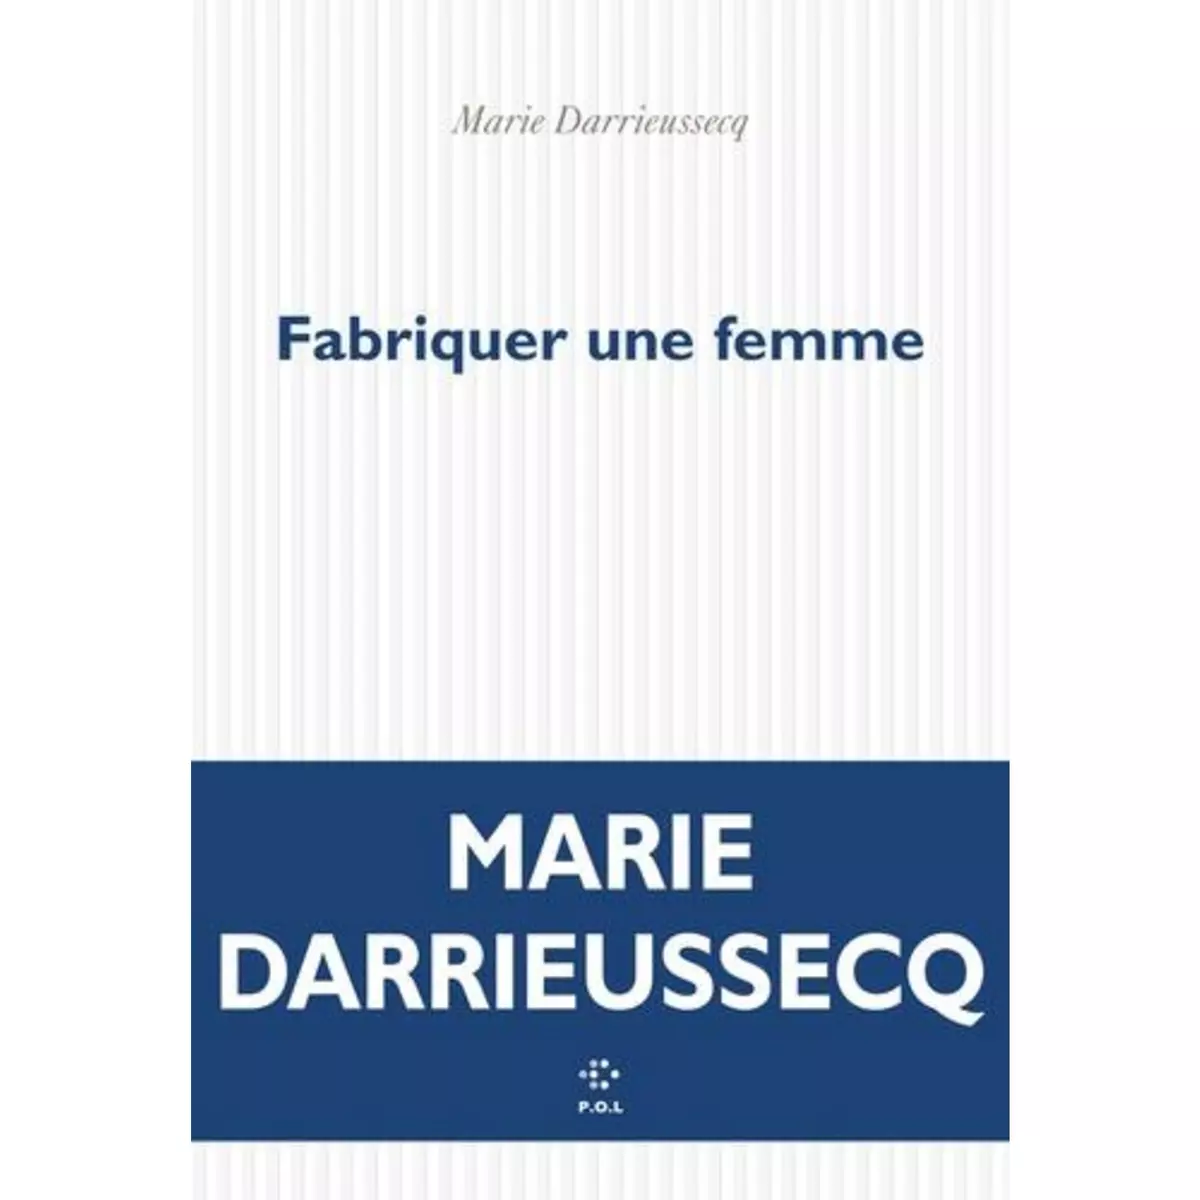  FABRIQUER UNE FEMME, Darrieussecq Marie